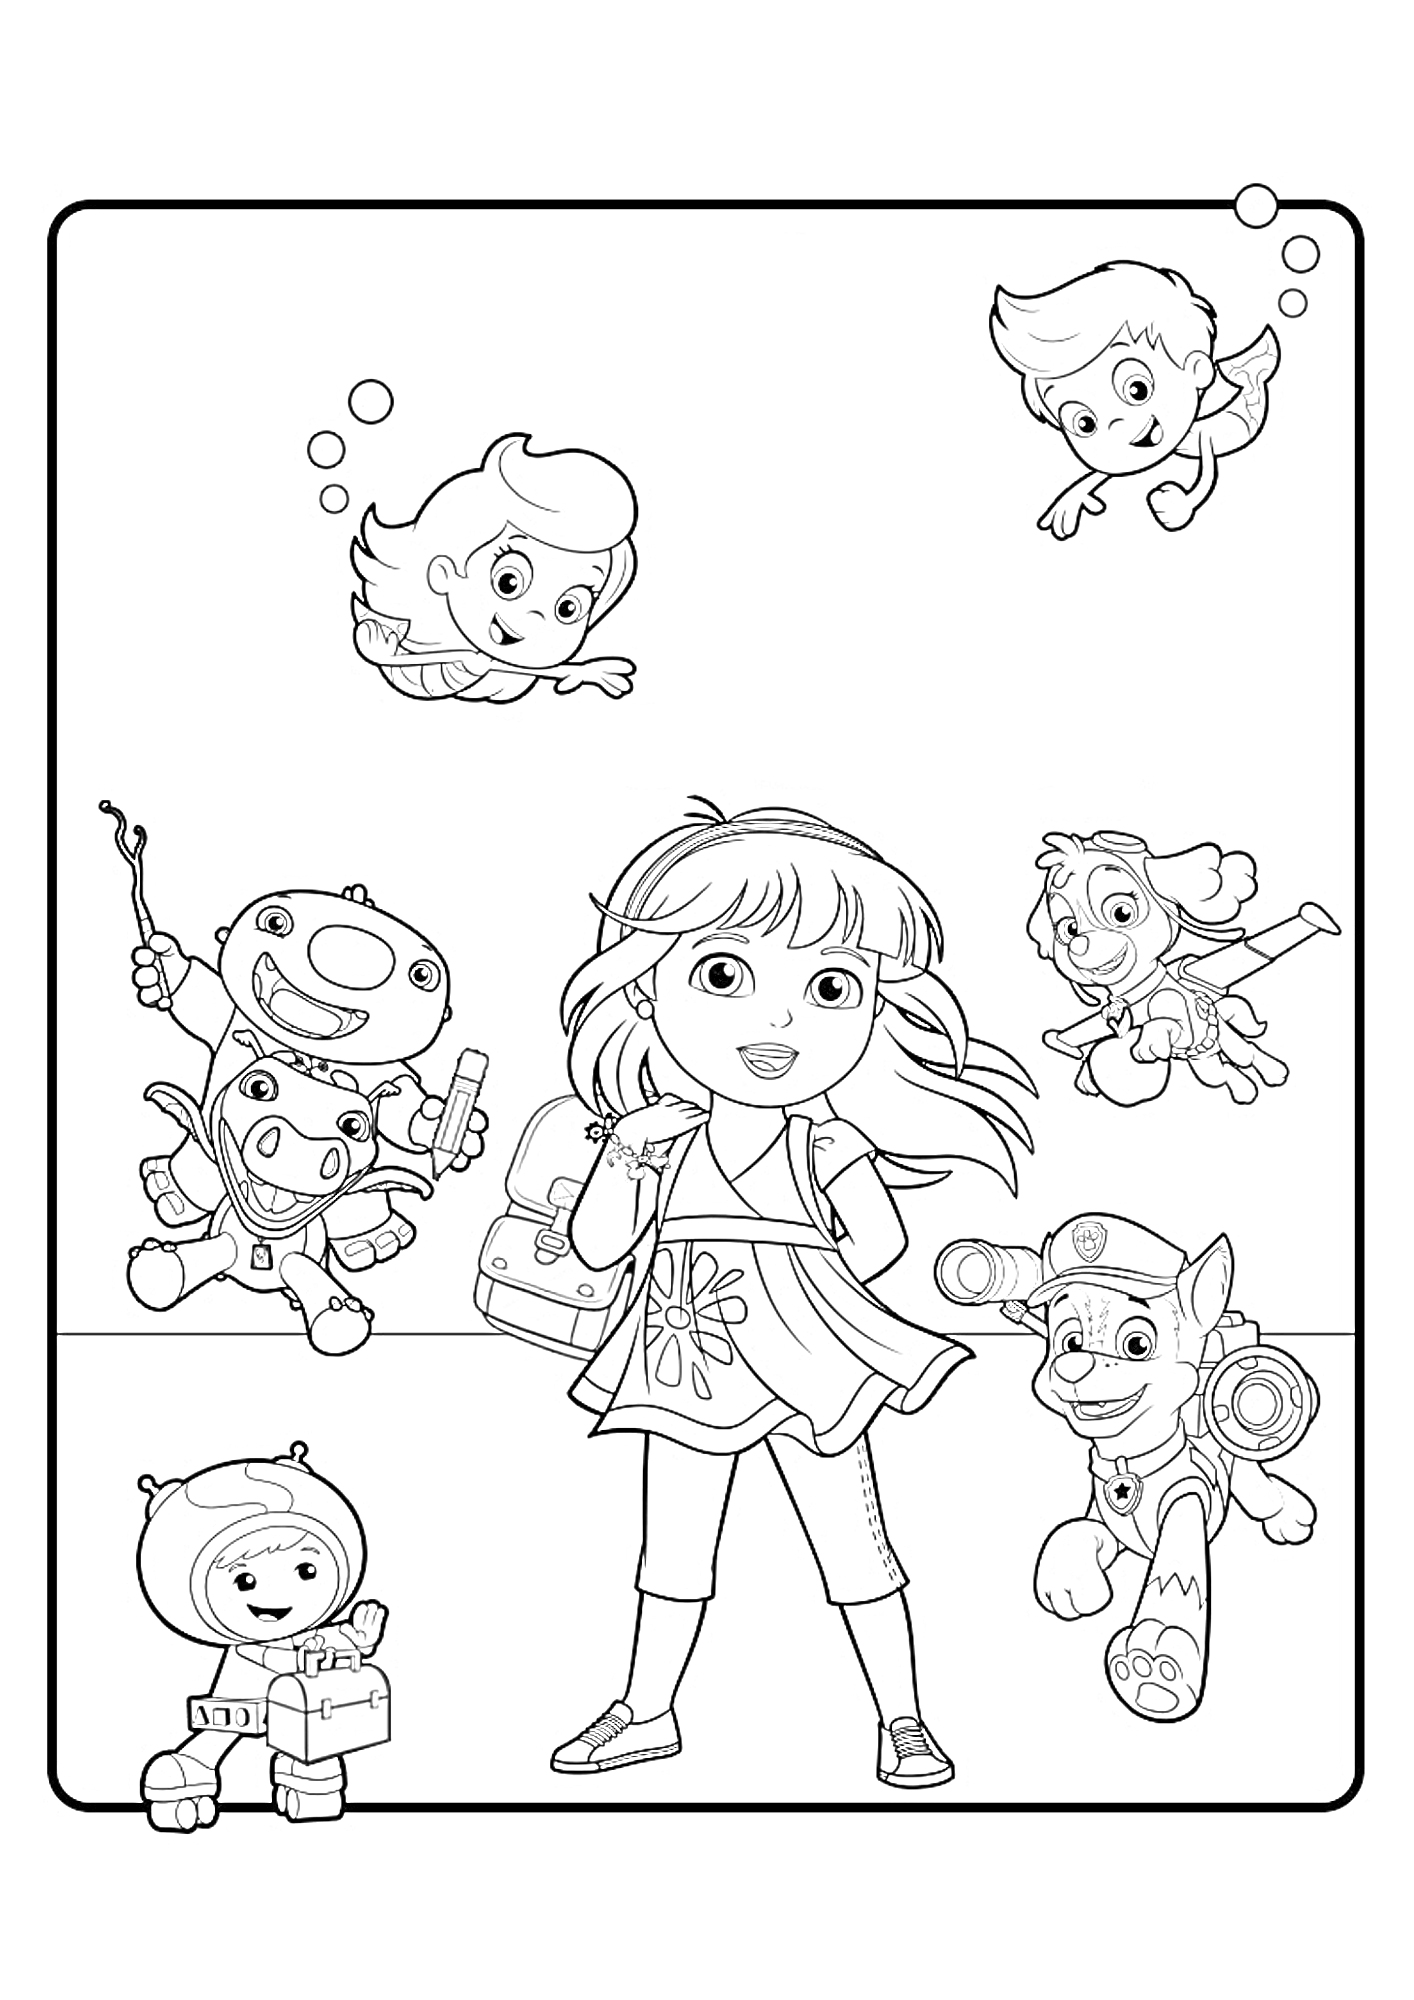 Даша с рюкзаком и друзьями - мальчик с подводной маской, девочка с подводной маской, робот с палочкой, щенок в шлеме, дитя в скафандре, и девочка с крыльями.